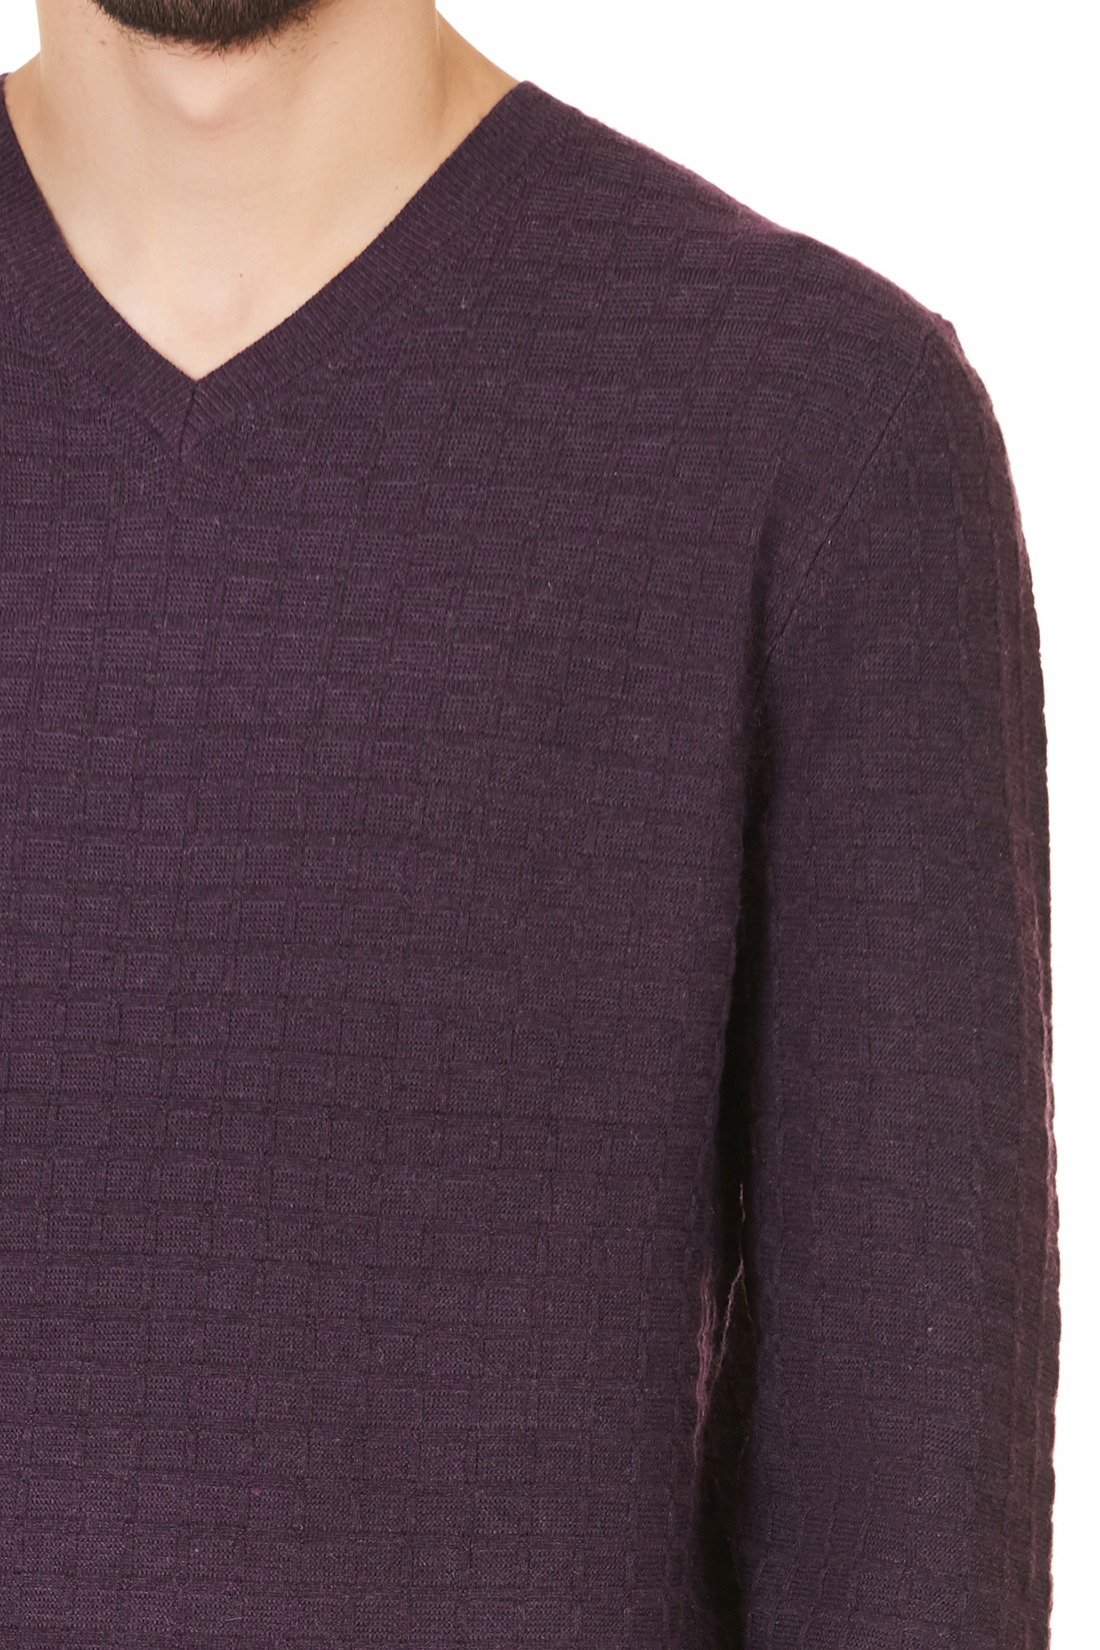 Пуловер с рельефным узором в клетку (арт. baon B637521), размер L, цвет фиолетовый Пуловер с рельефным узором в клетку (арт. baon B637521) - фото 4